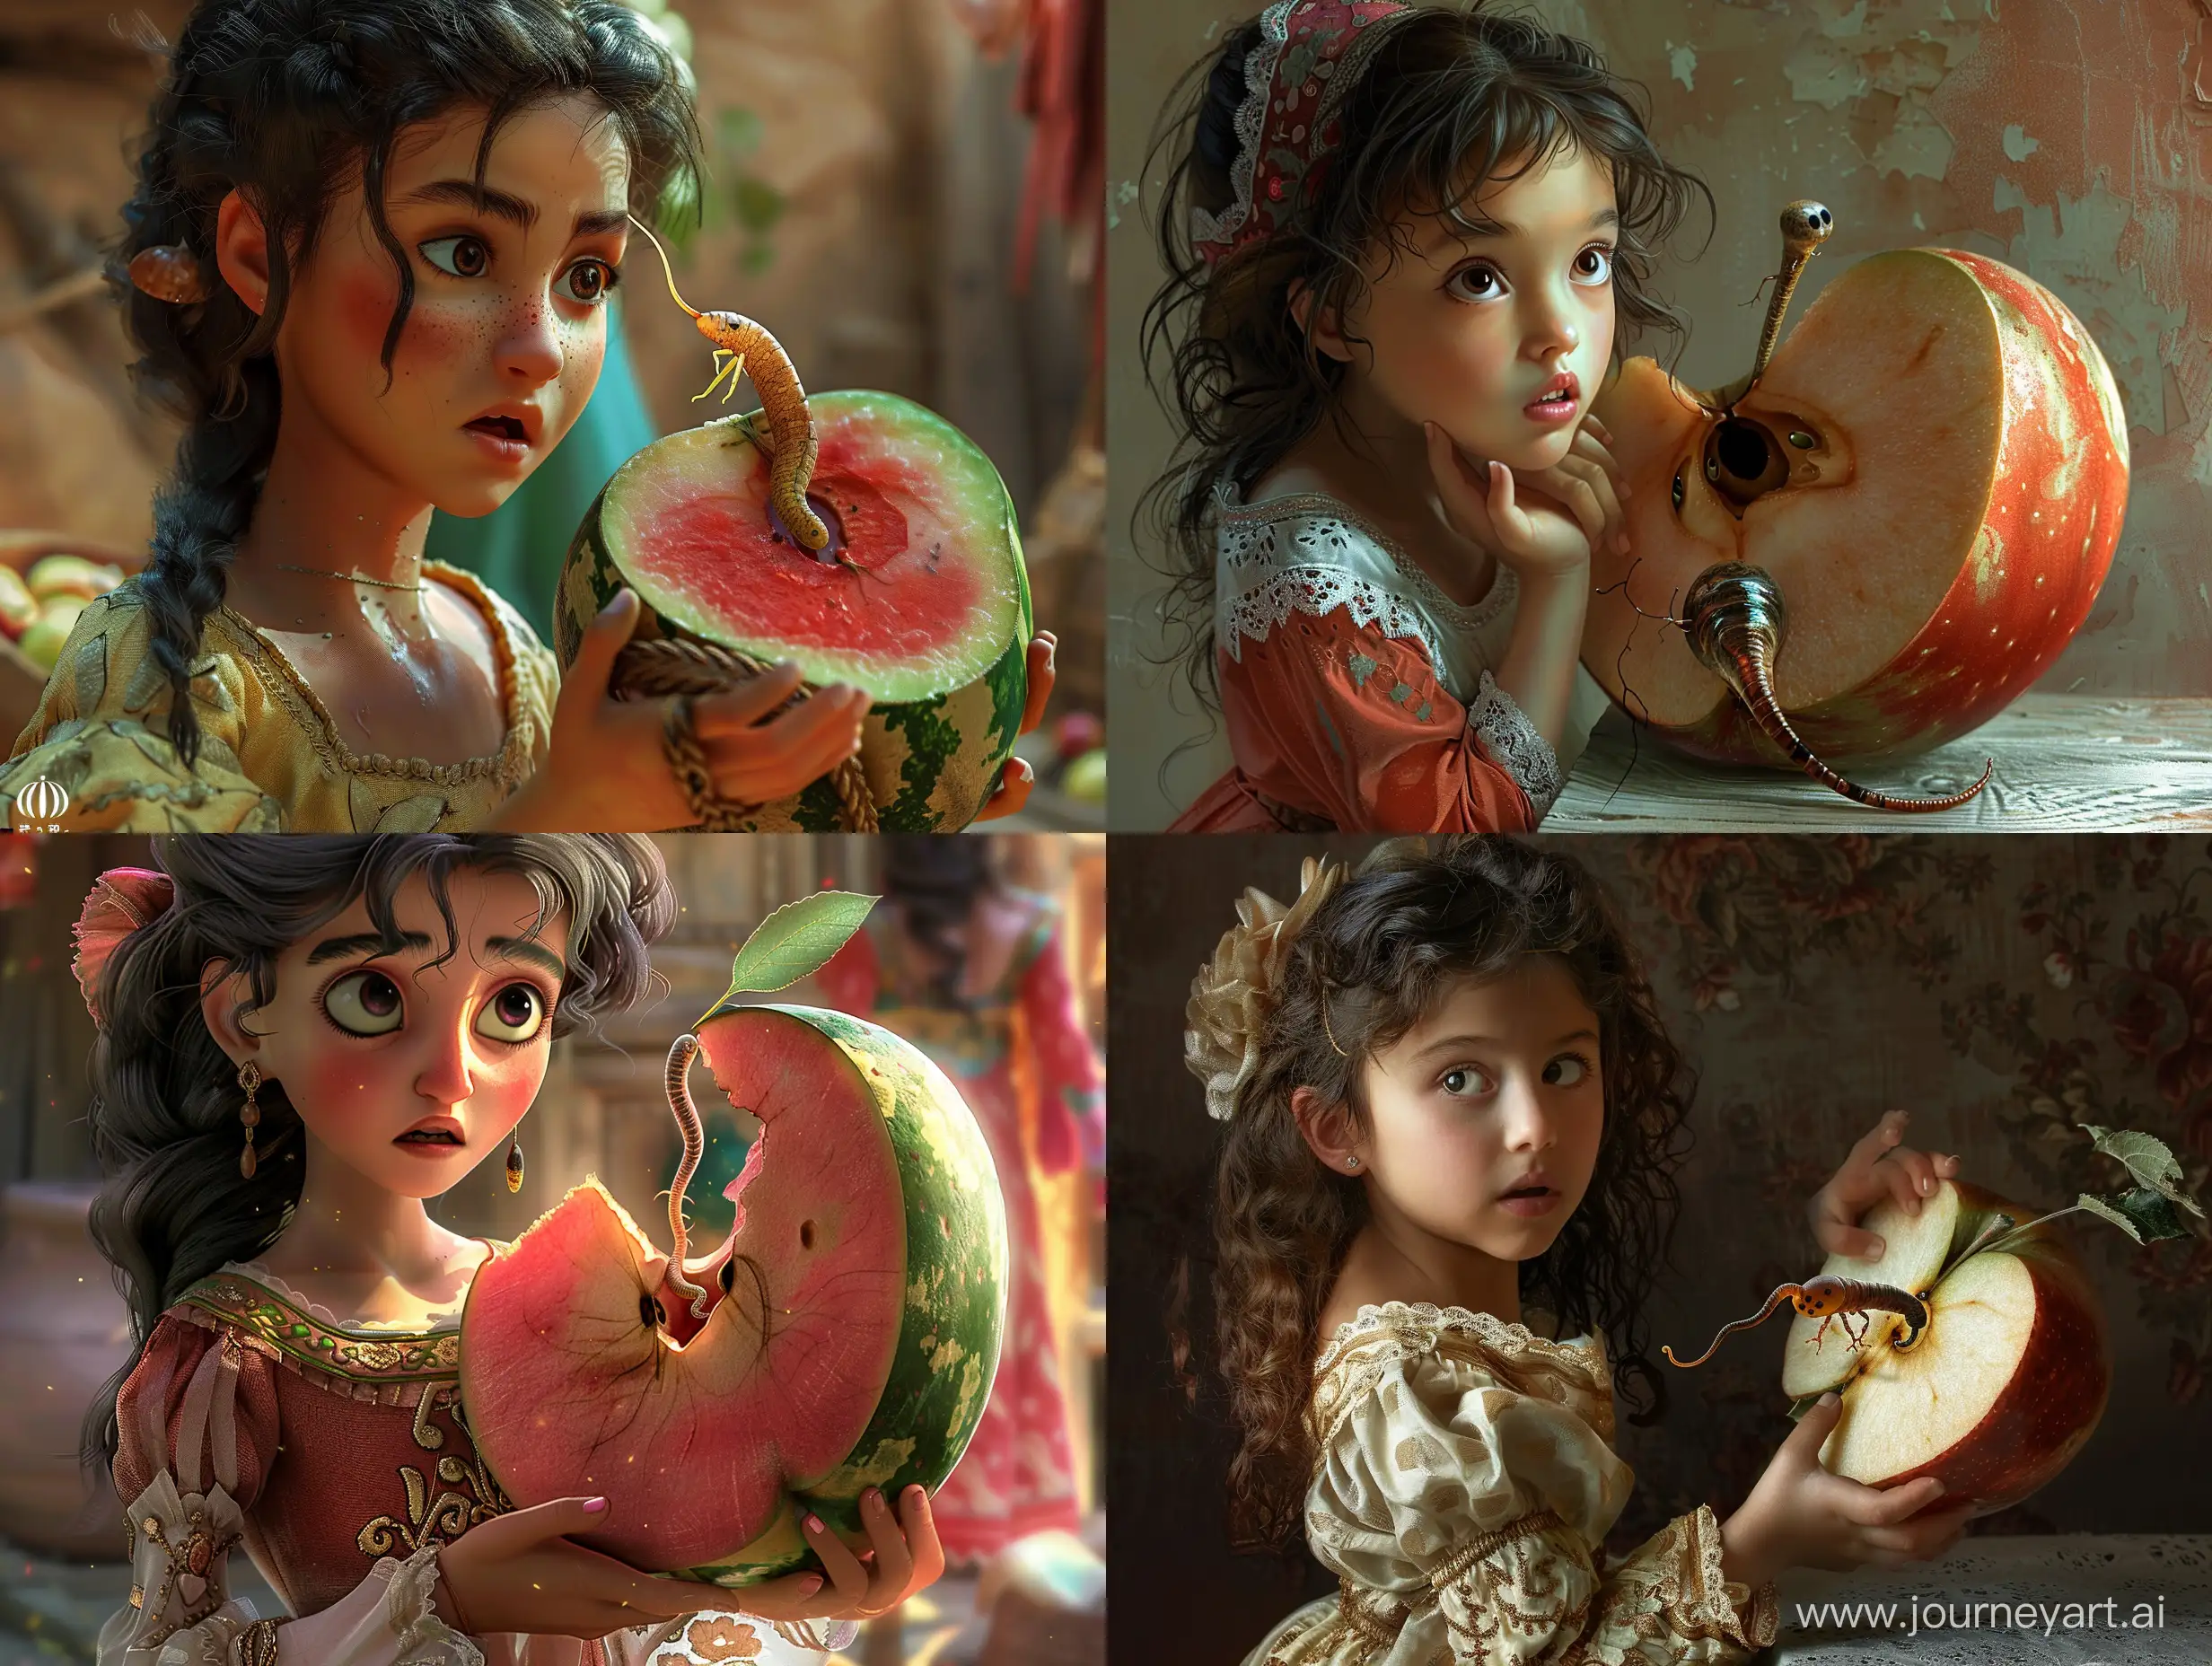 دختر پارسی یک نصف سیب بزرگ که به اندازه یک هندوانه است را در دست دارد و به کرمی که از سیب بیرون آمده نگاه میکند، یک عکس واقع گرایانه اچ دی برای من ایجاد کن